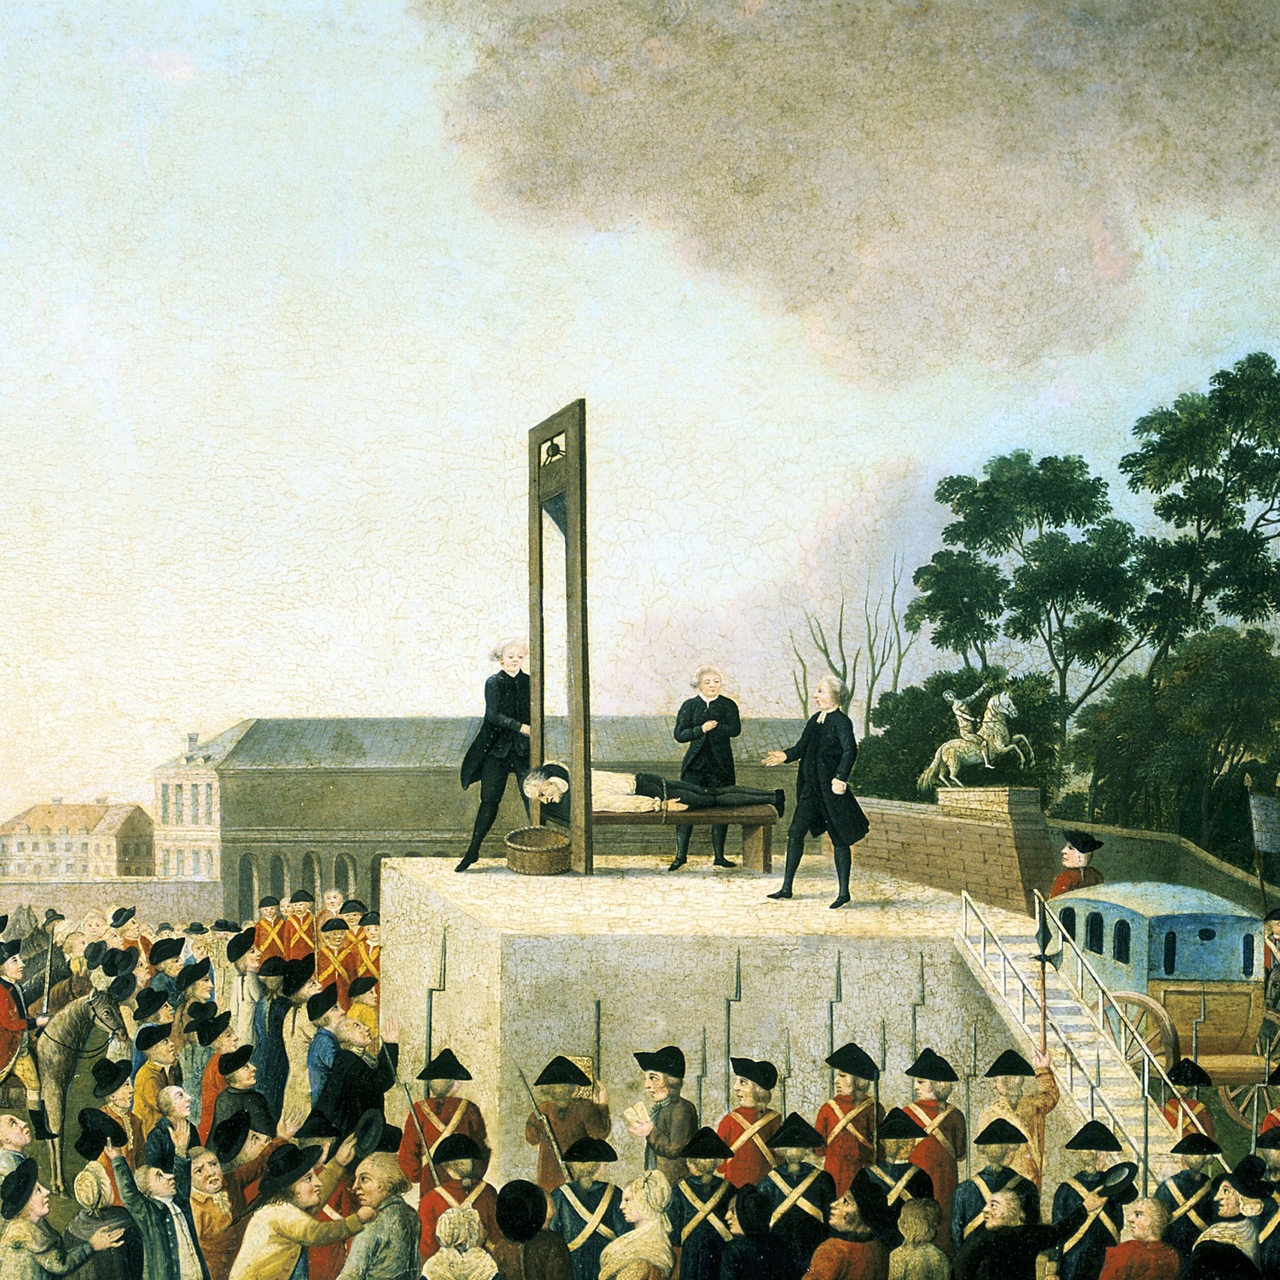 Hinrichtung Louis XVI von Frankreich am 21.1.1793 mittels einer Guillotine. Ölbild Carnavalet, Paris